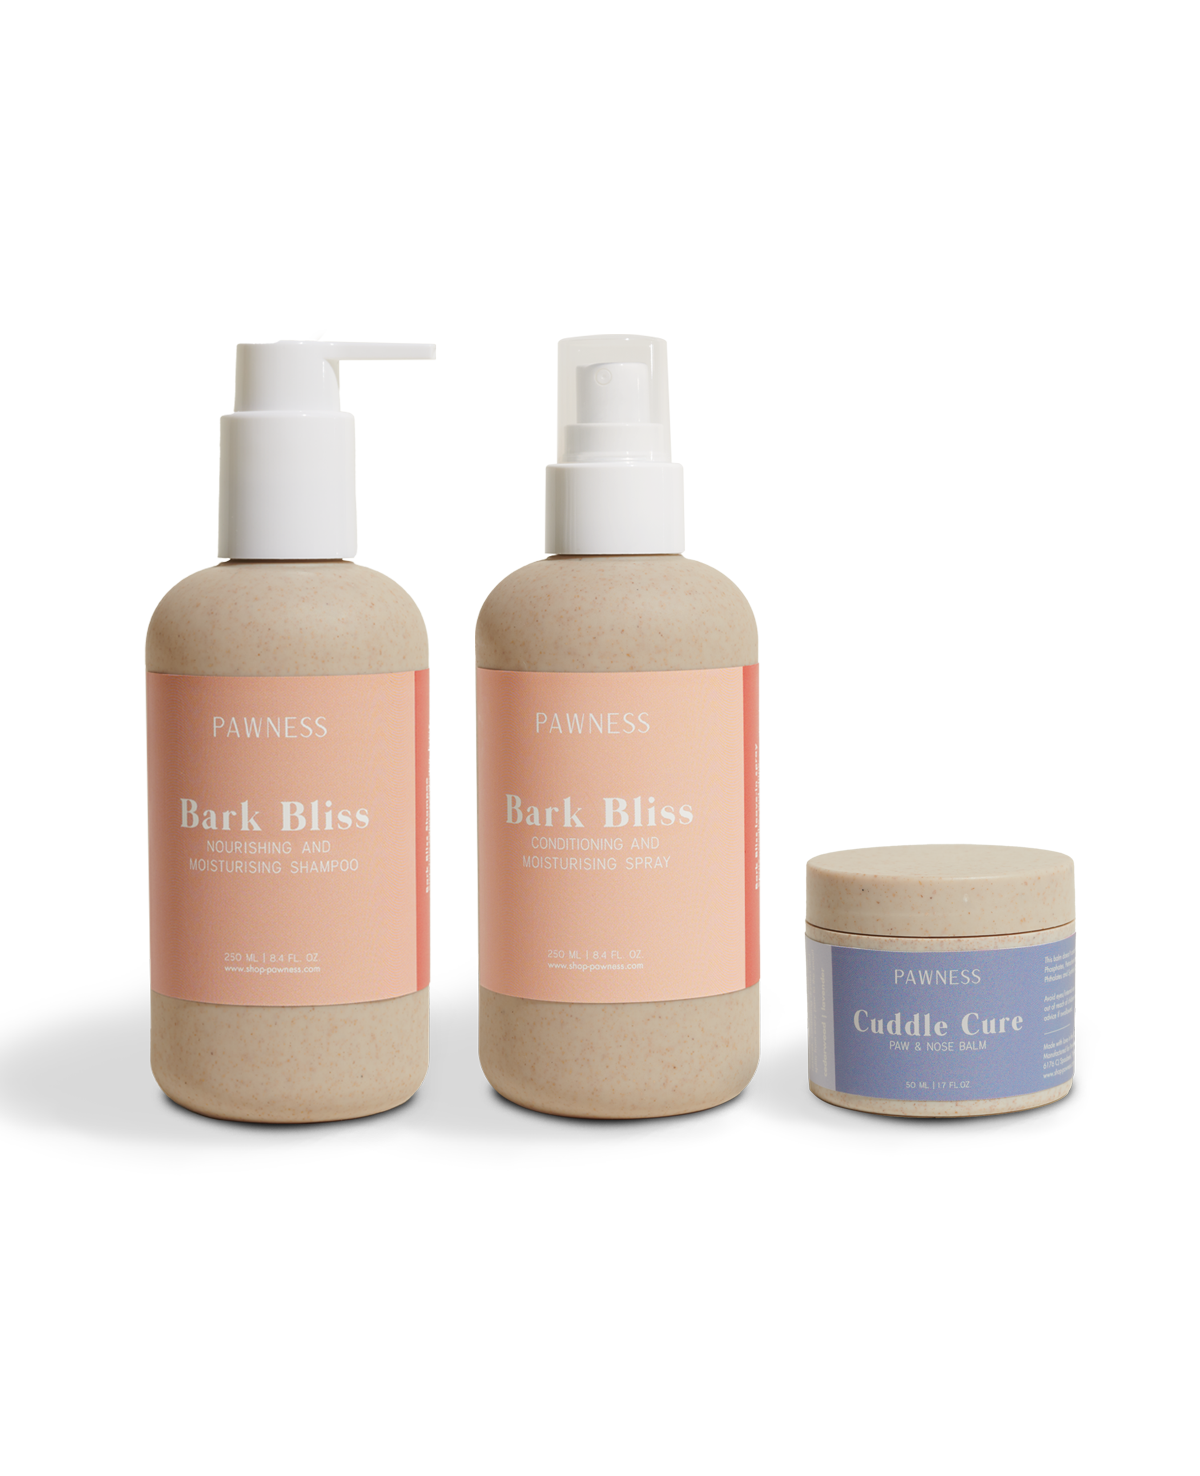 Back to Basics-collectie: Body wash, lotion en body butter. Een trio van essentiële producten om je huid te voeden en te hydrateren.